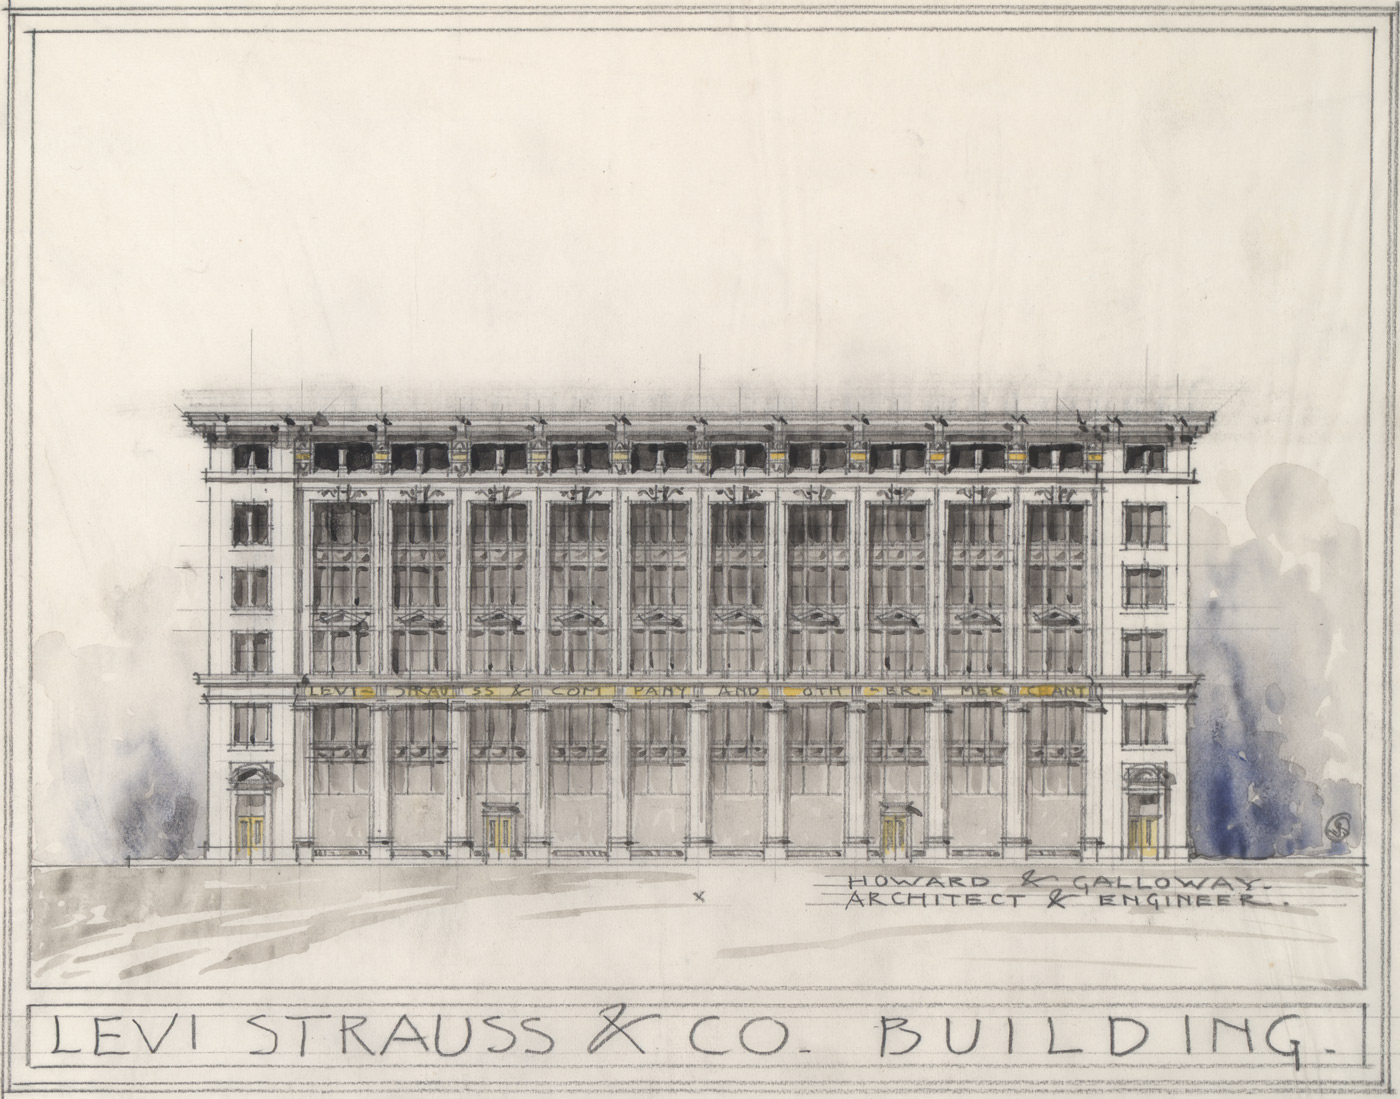 levis sketch building